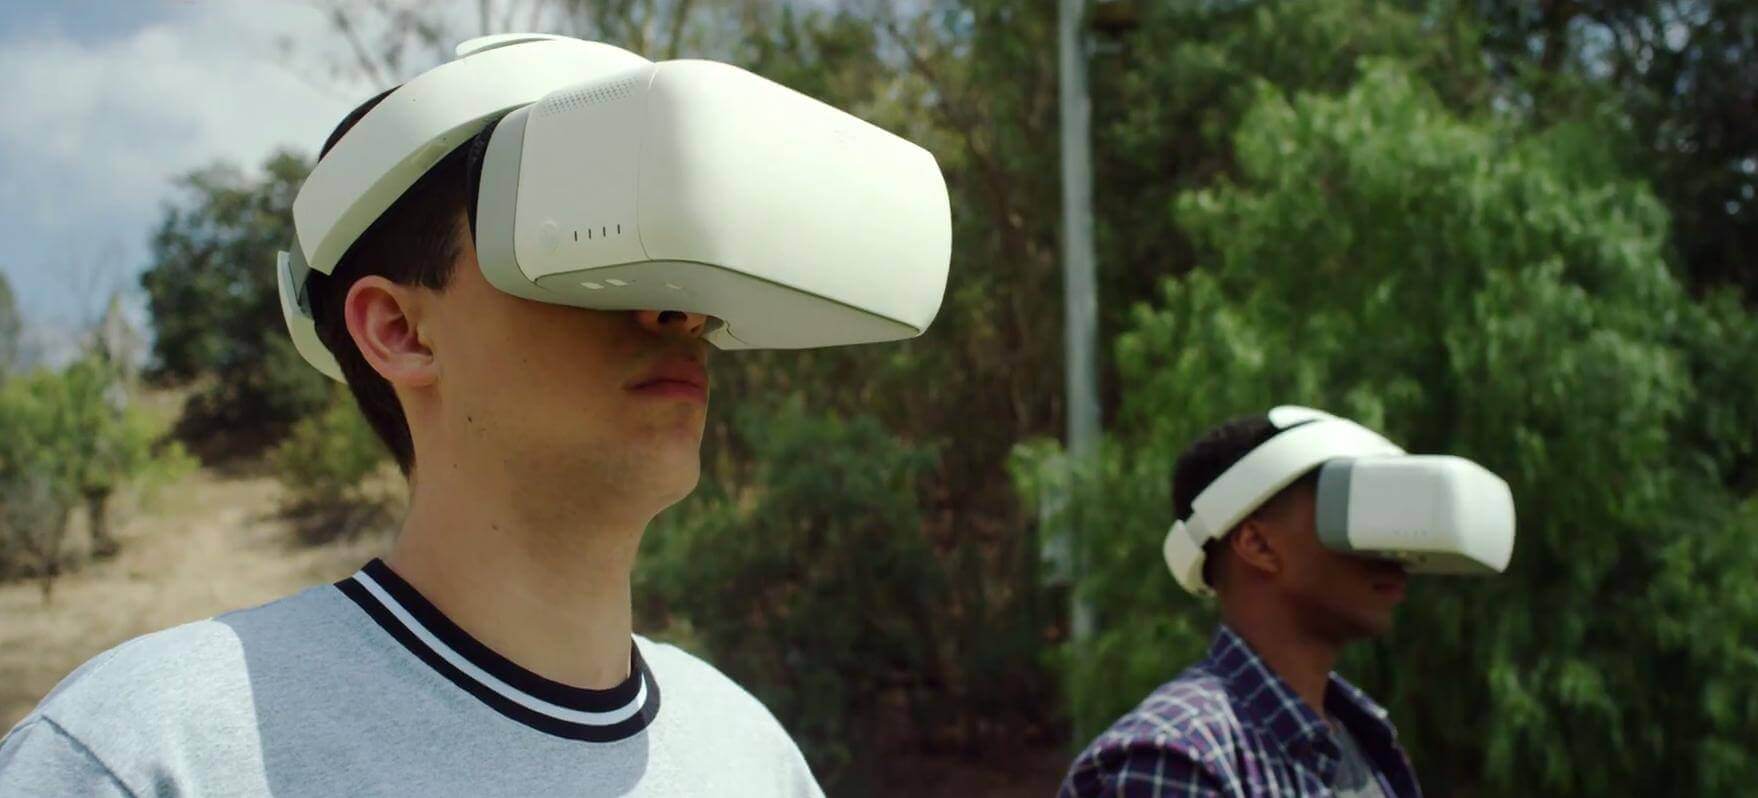 DJI Goggles - cặp kính trải nghiệm thực tế ảo của DJI